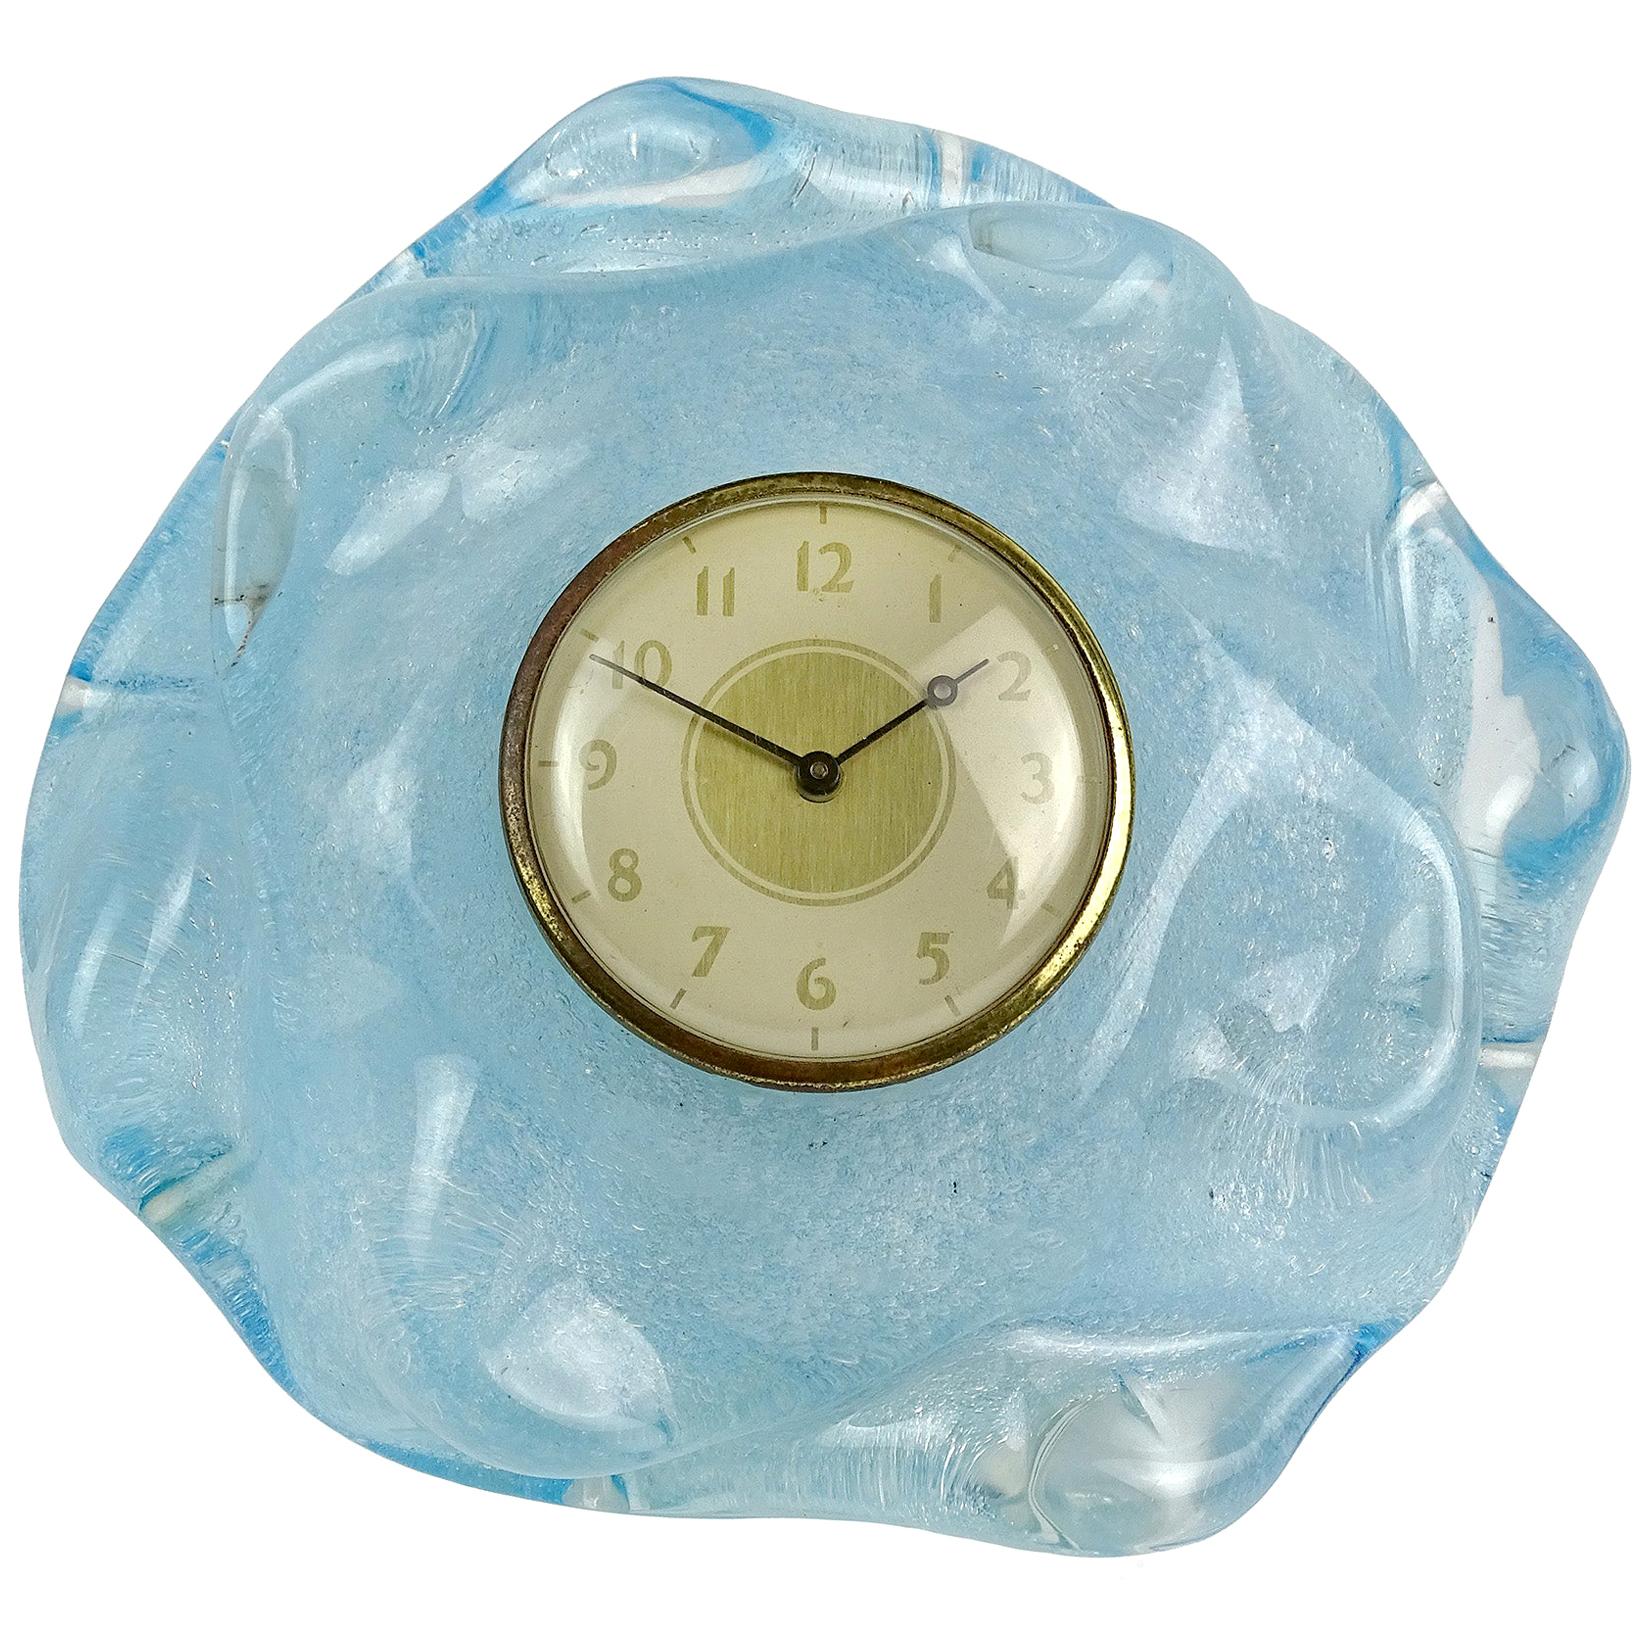 Seguso Vetri d'Arte Murano Blue Pulegoso Bubbles Italian Art Glass Desk Clock For Sale